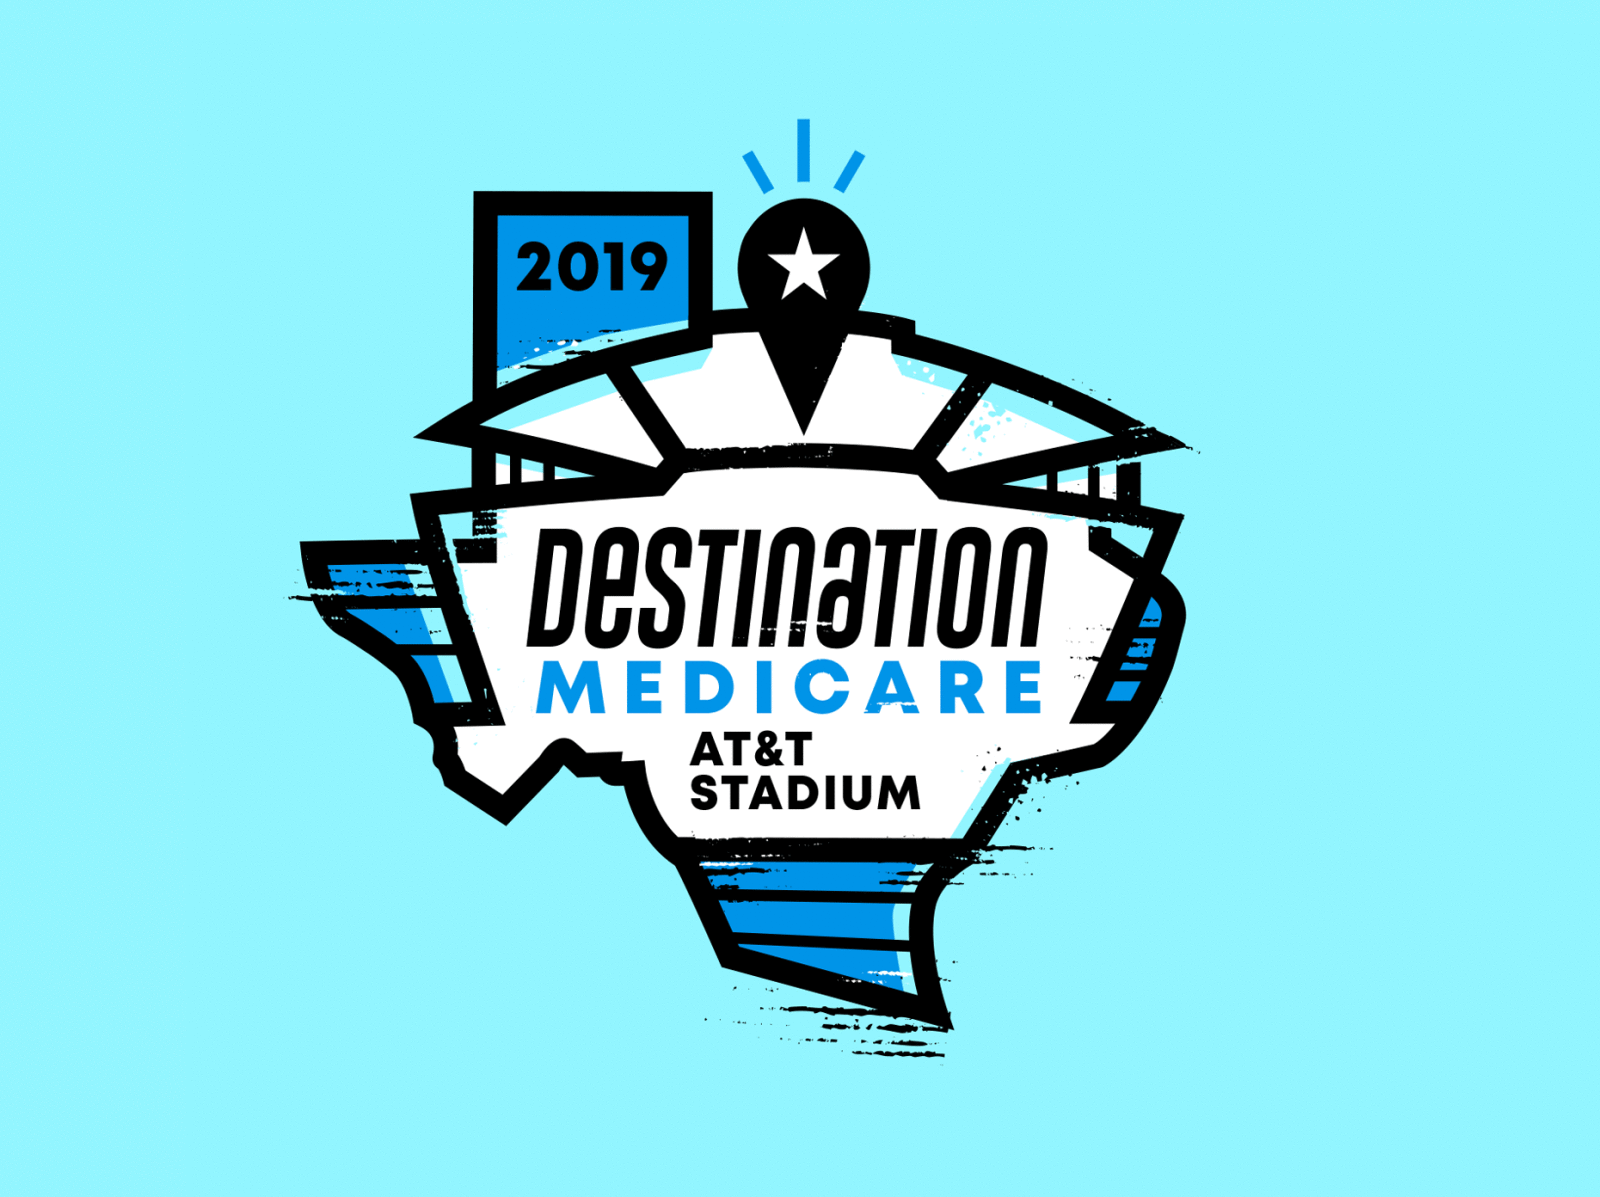 2019 Destination austin branding conference cowboys dallas design event football health healthcare logo mark medical medicare merch pin stadium texas texture vector